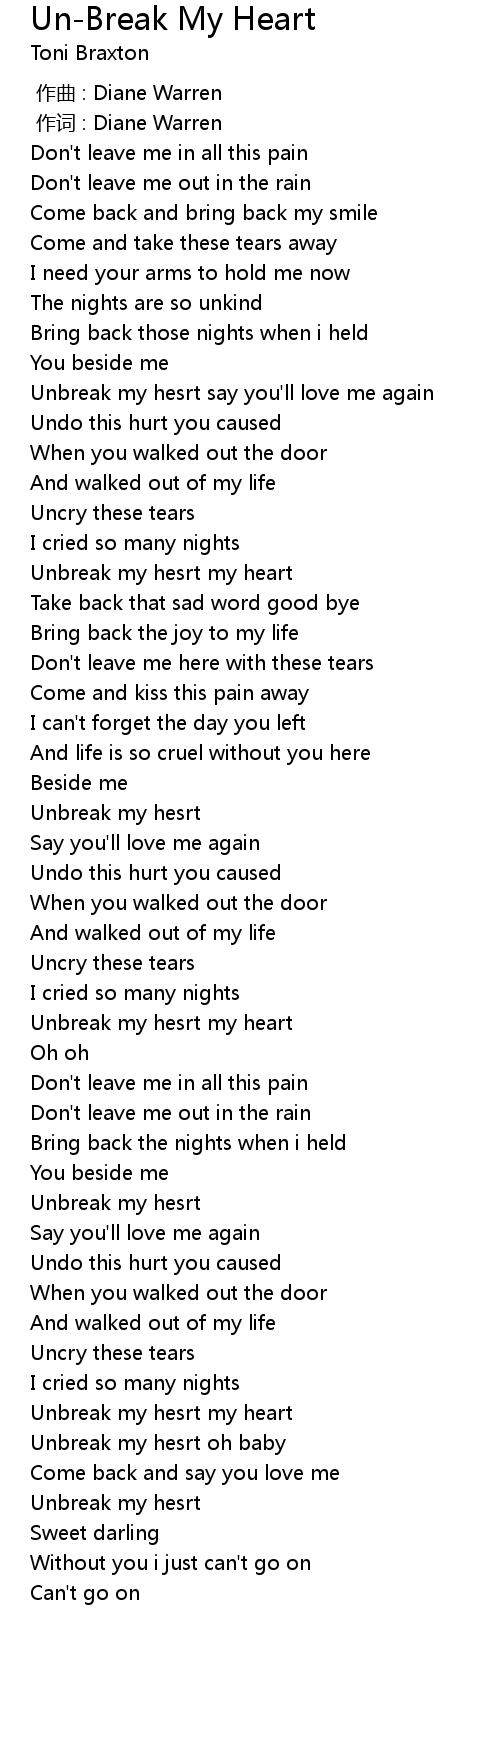 Give your heart a break lyrics